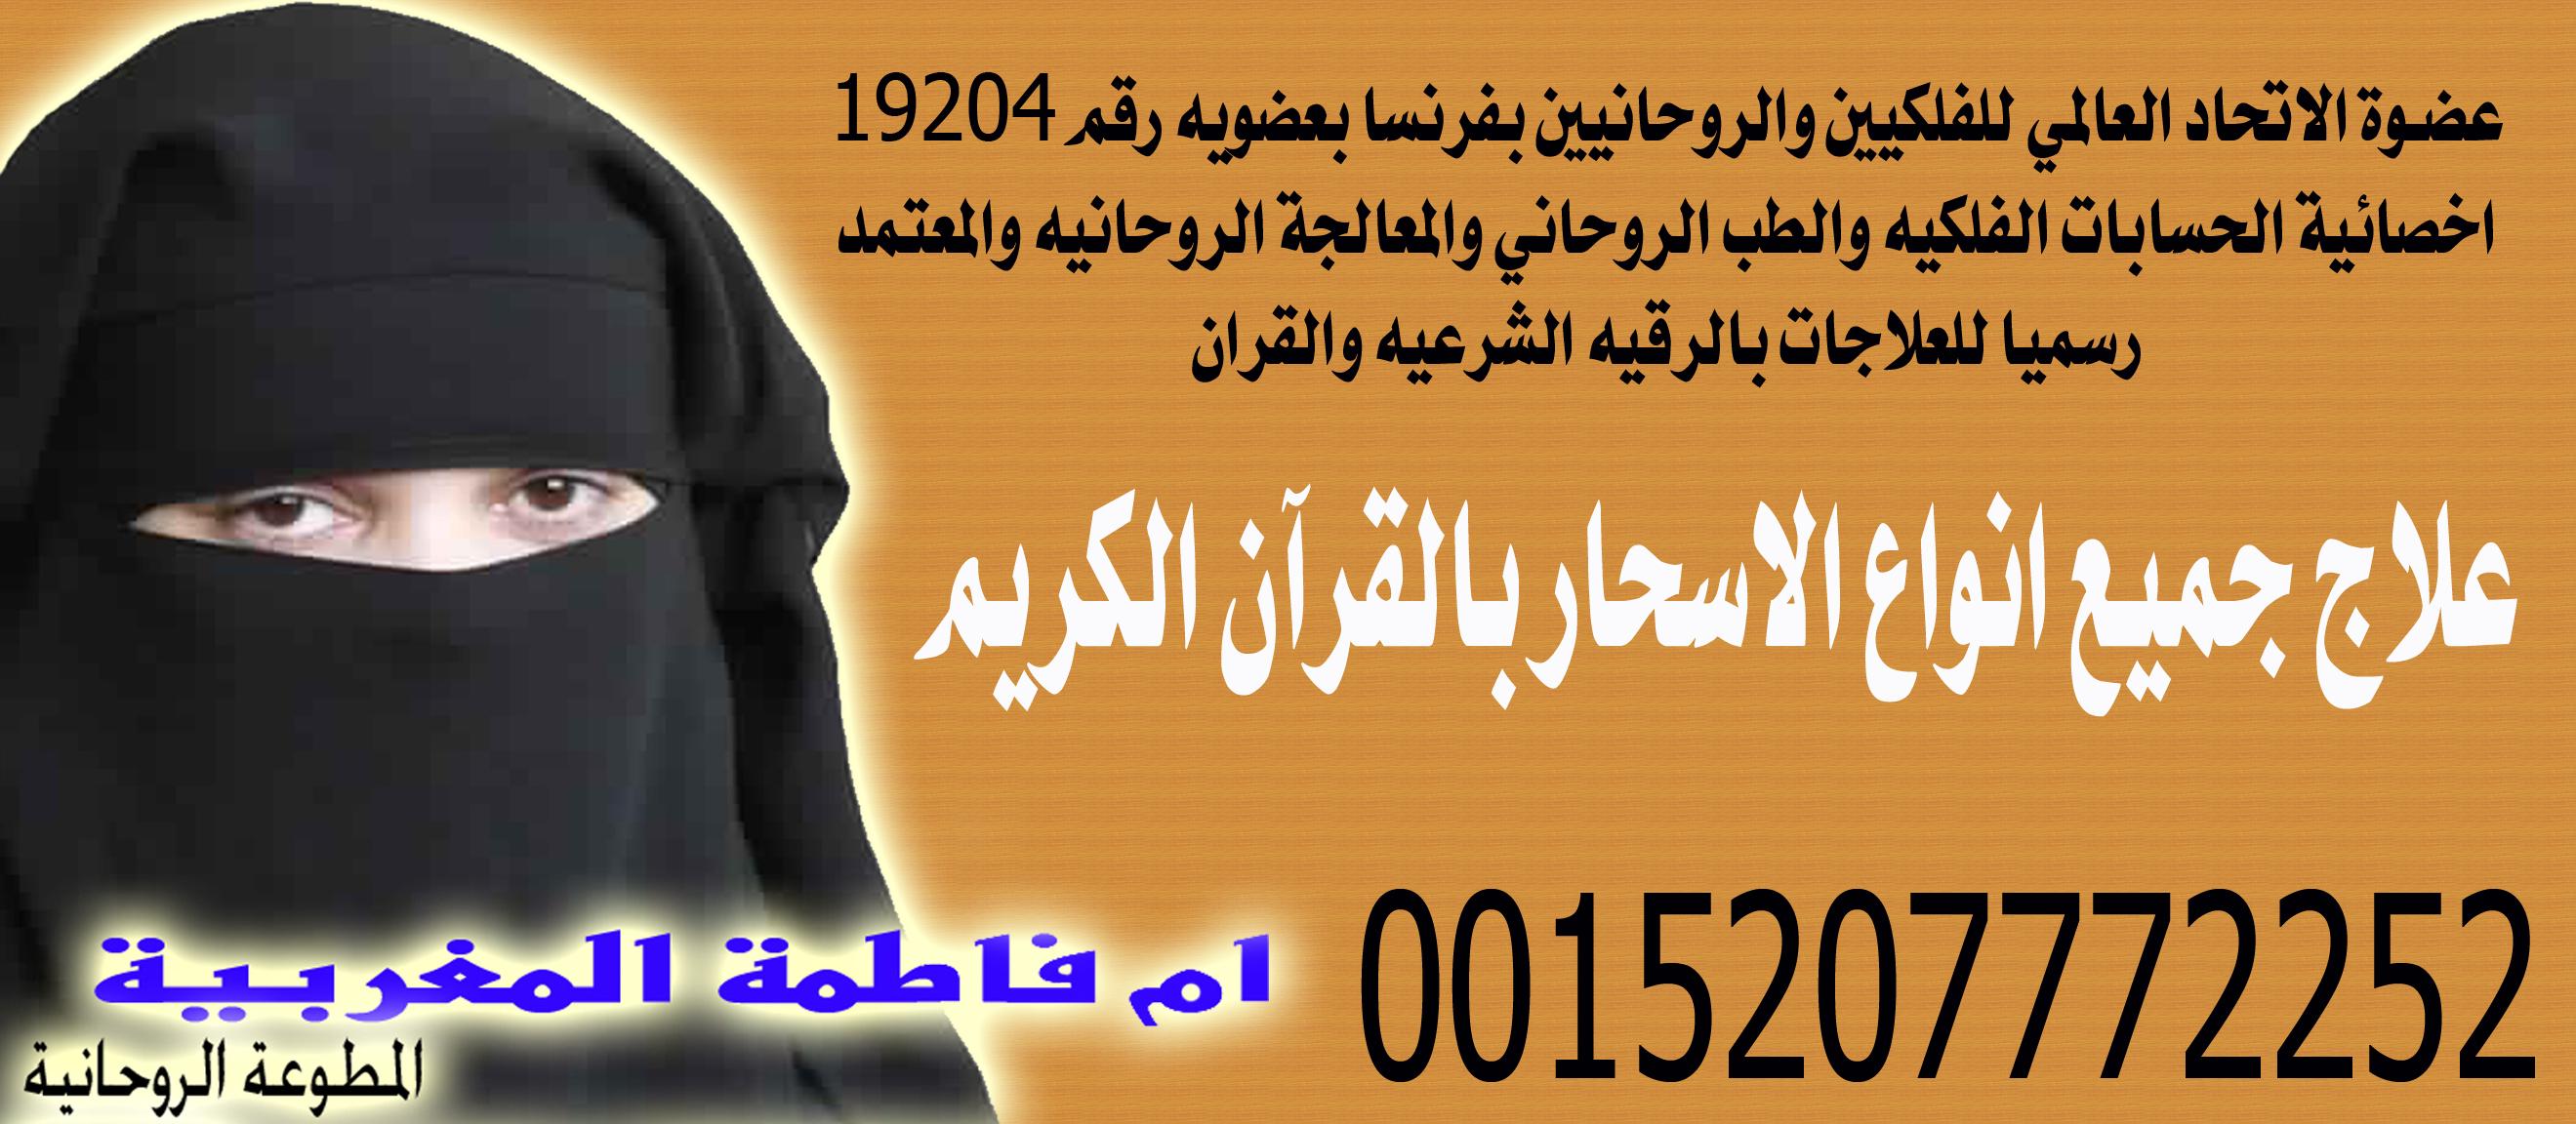 مطوع روحاني اماراتي مجرب 456017899